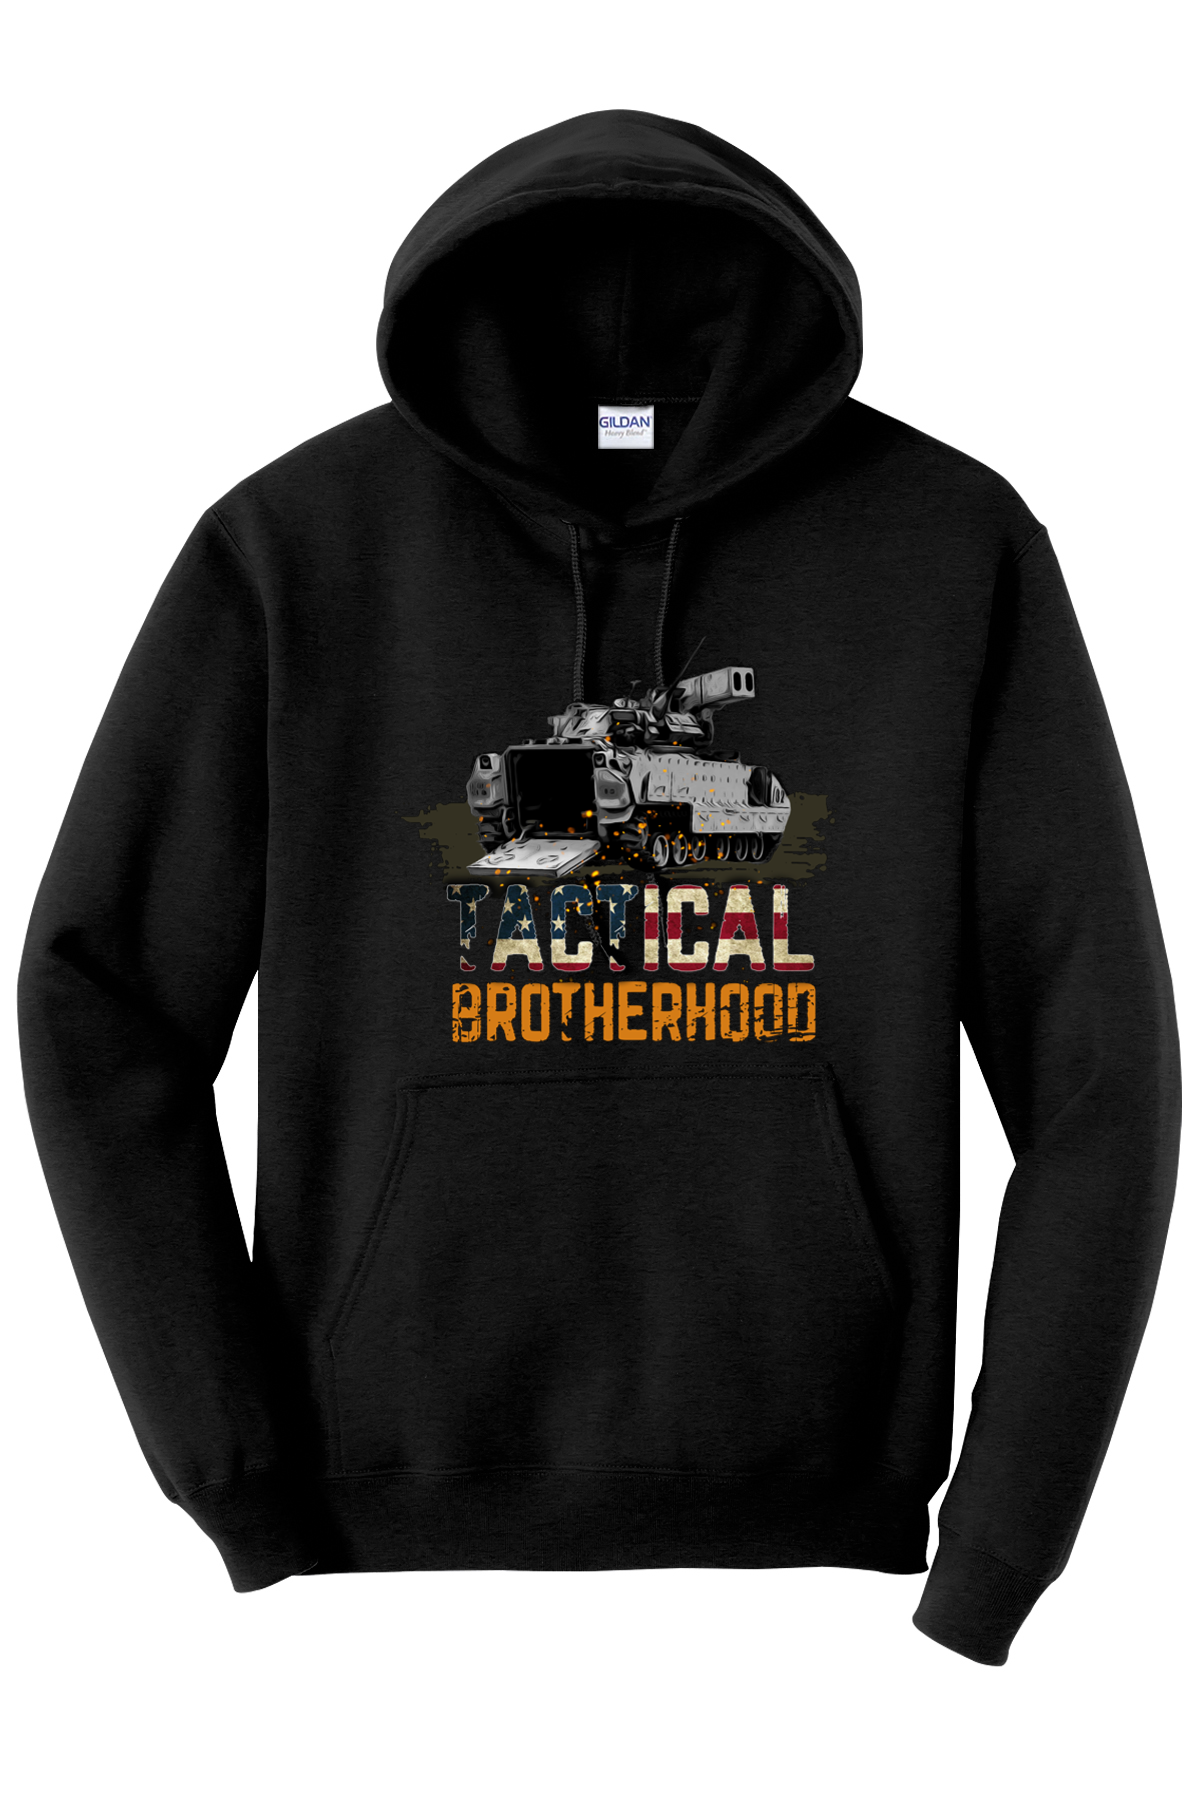 OG1 - Bradley - Tactical Brotherhood Hoodie